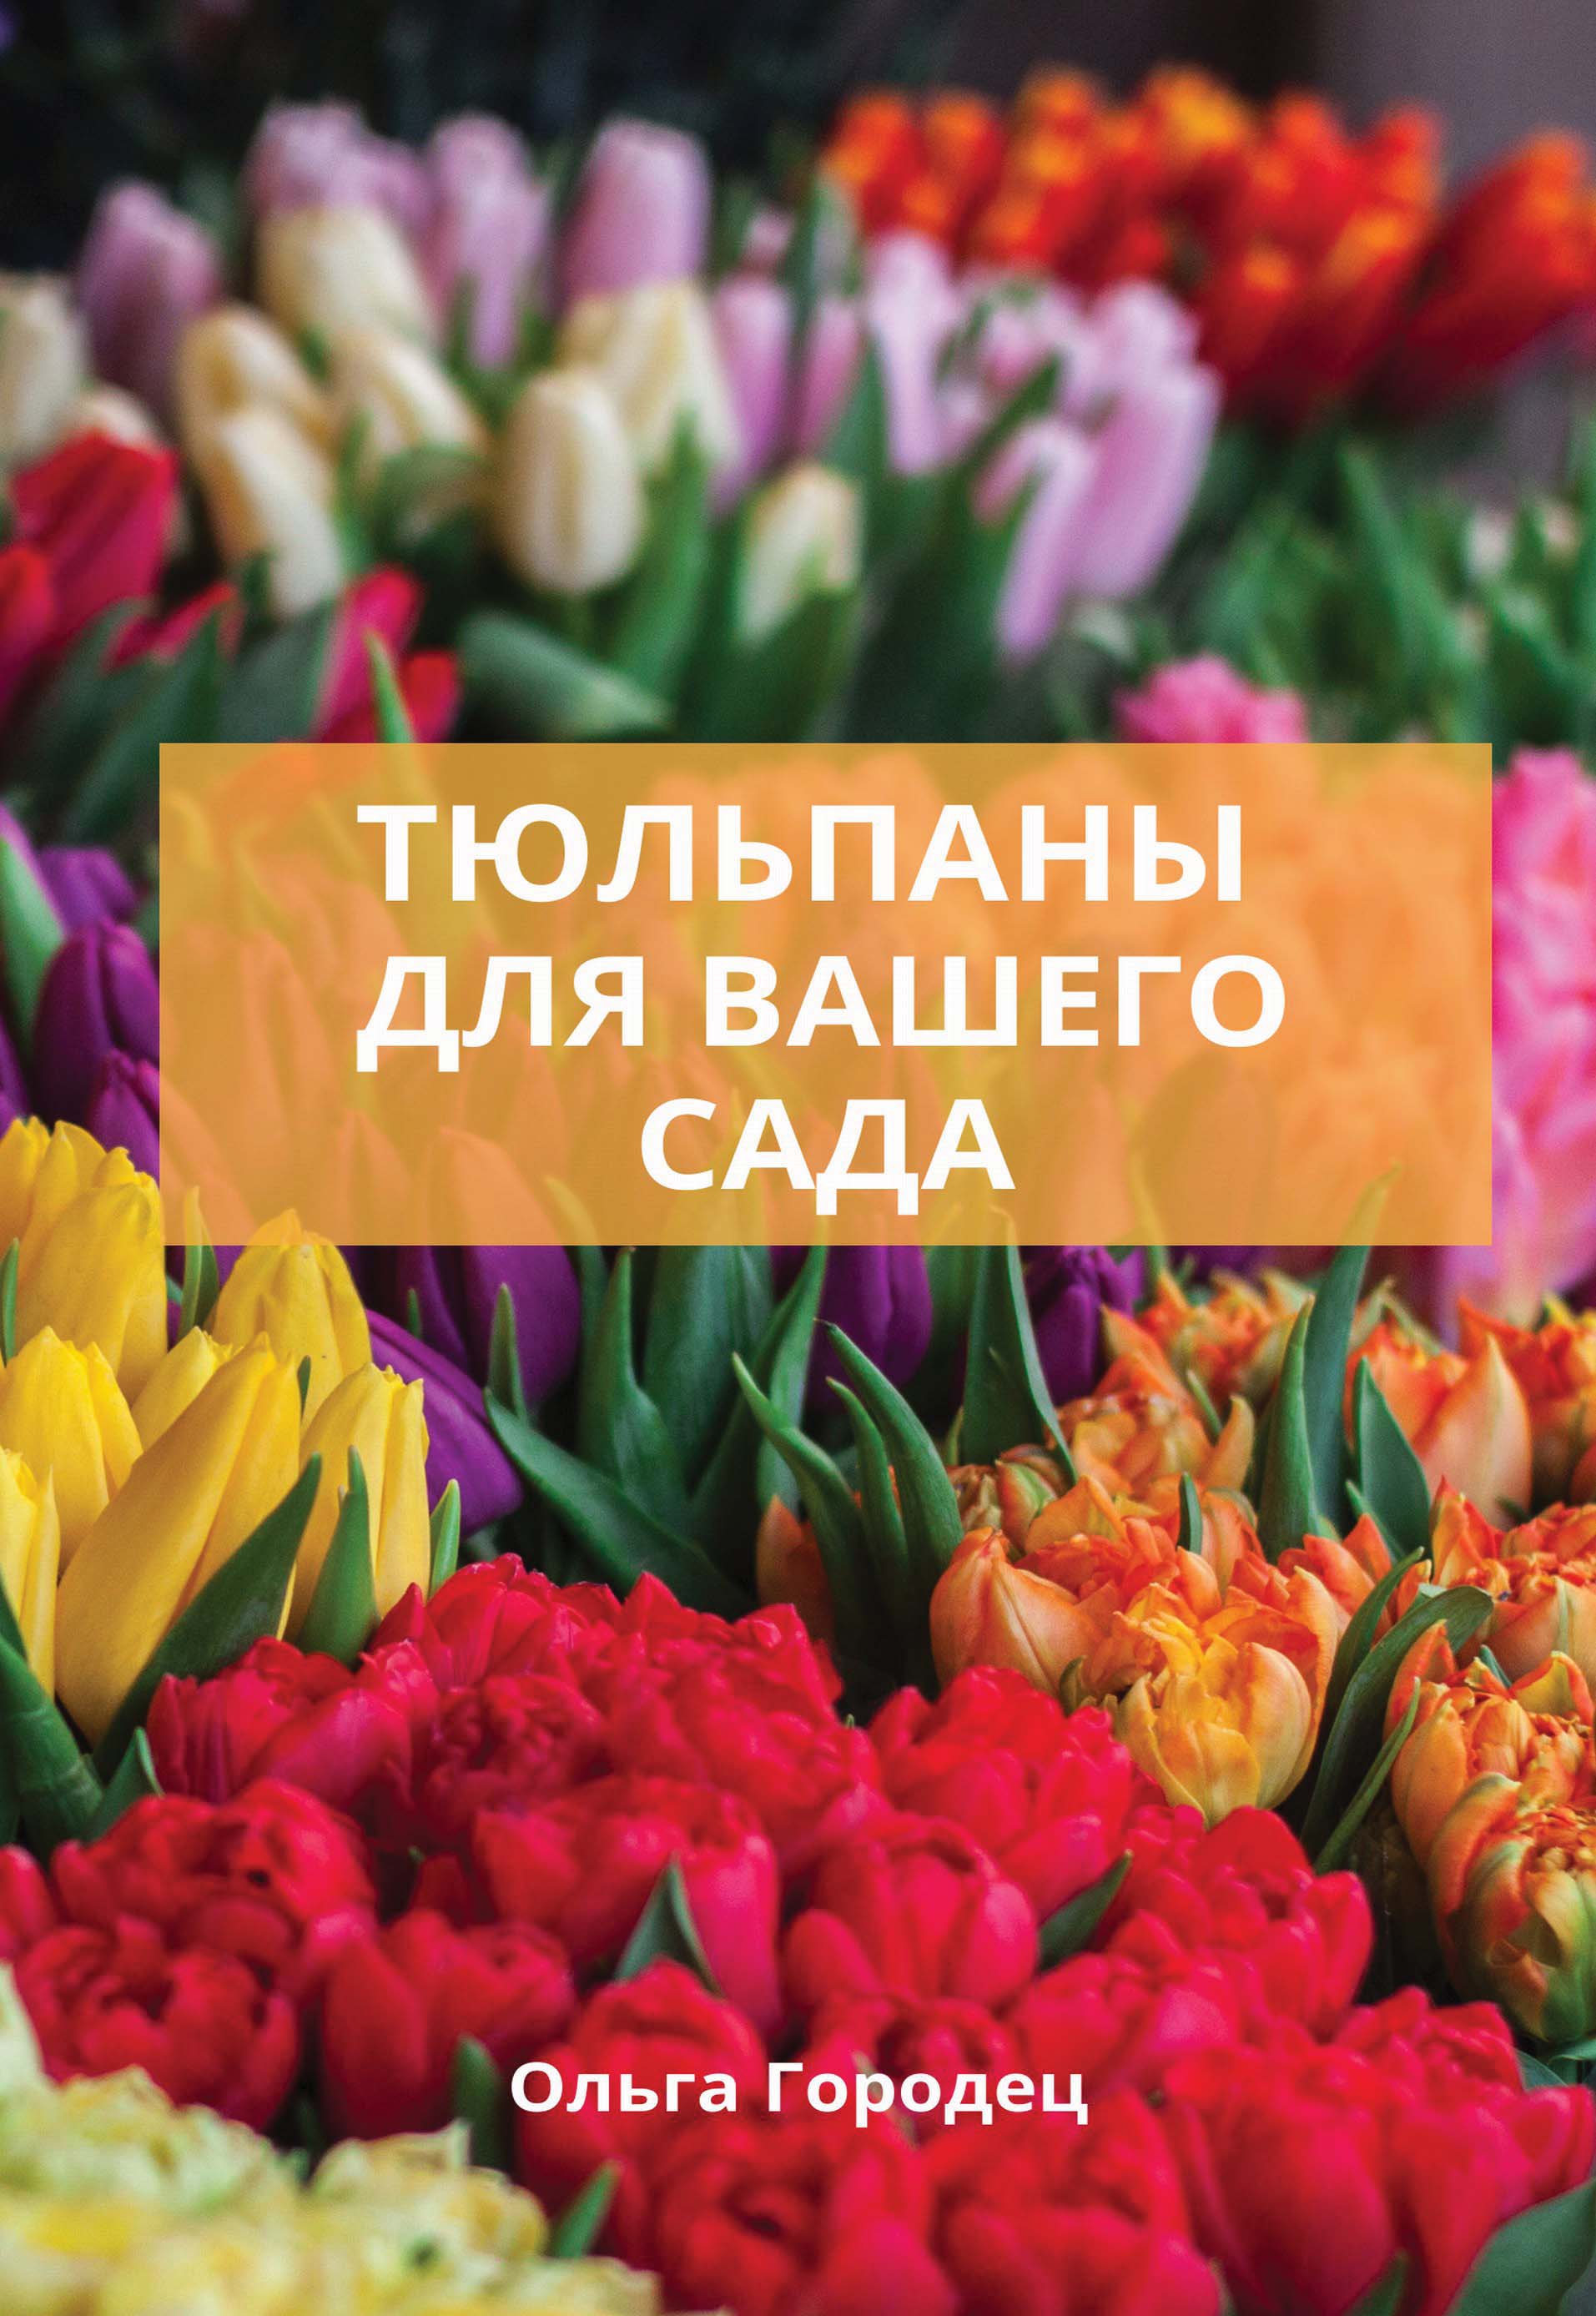 Тюльпаны. Лучшие сорта для вашего сада